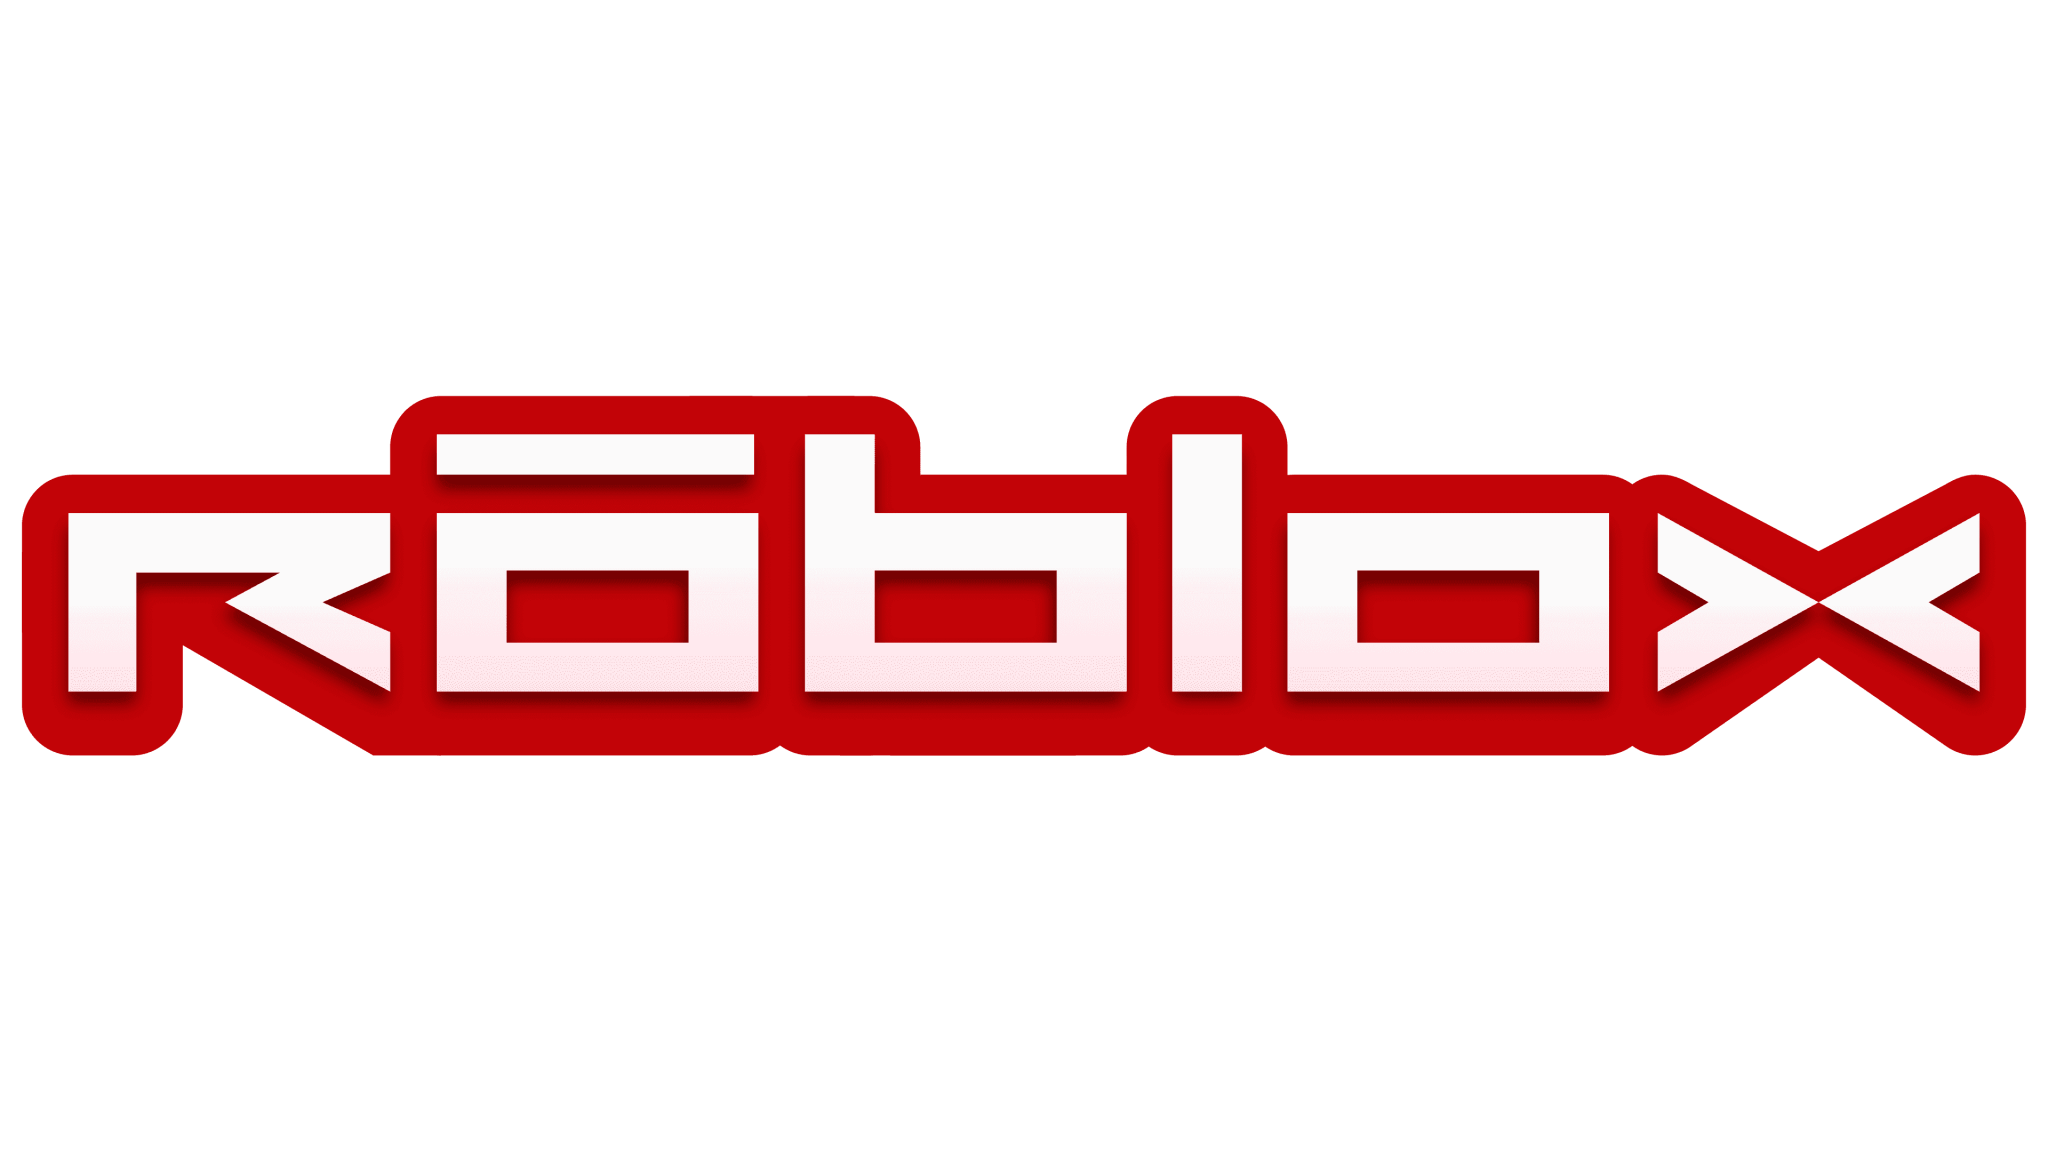 Roblox Logo Png 2020 - Riset